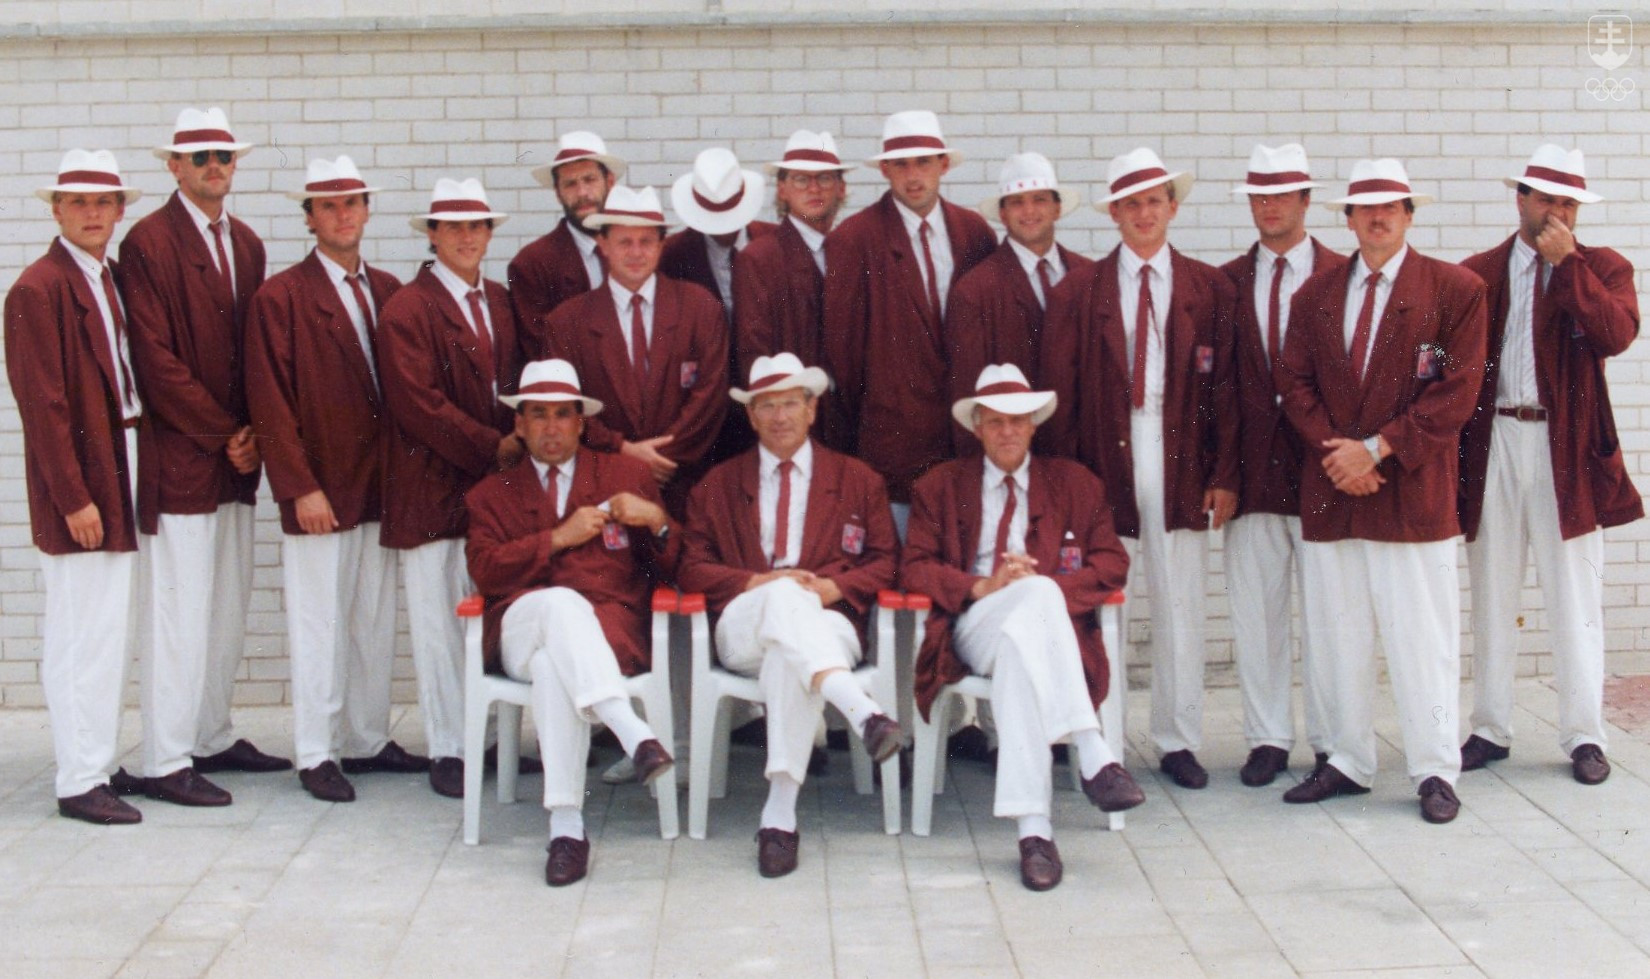 Vodnopólové družstvo Slovenska na OH 1992 v Barcelone tvorili samí Slováci. Roman Poláčikä na fotografii v druhom rade v strede vyčnieva najvyššou postavou.